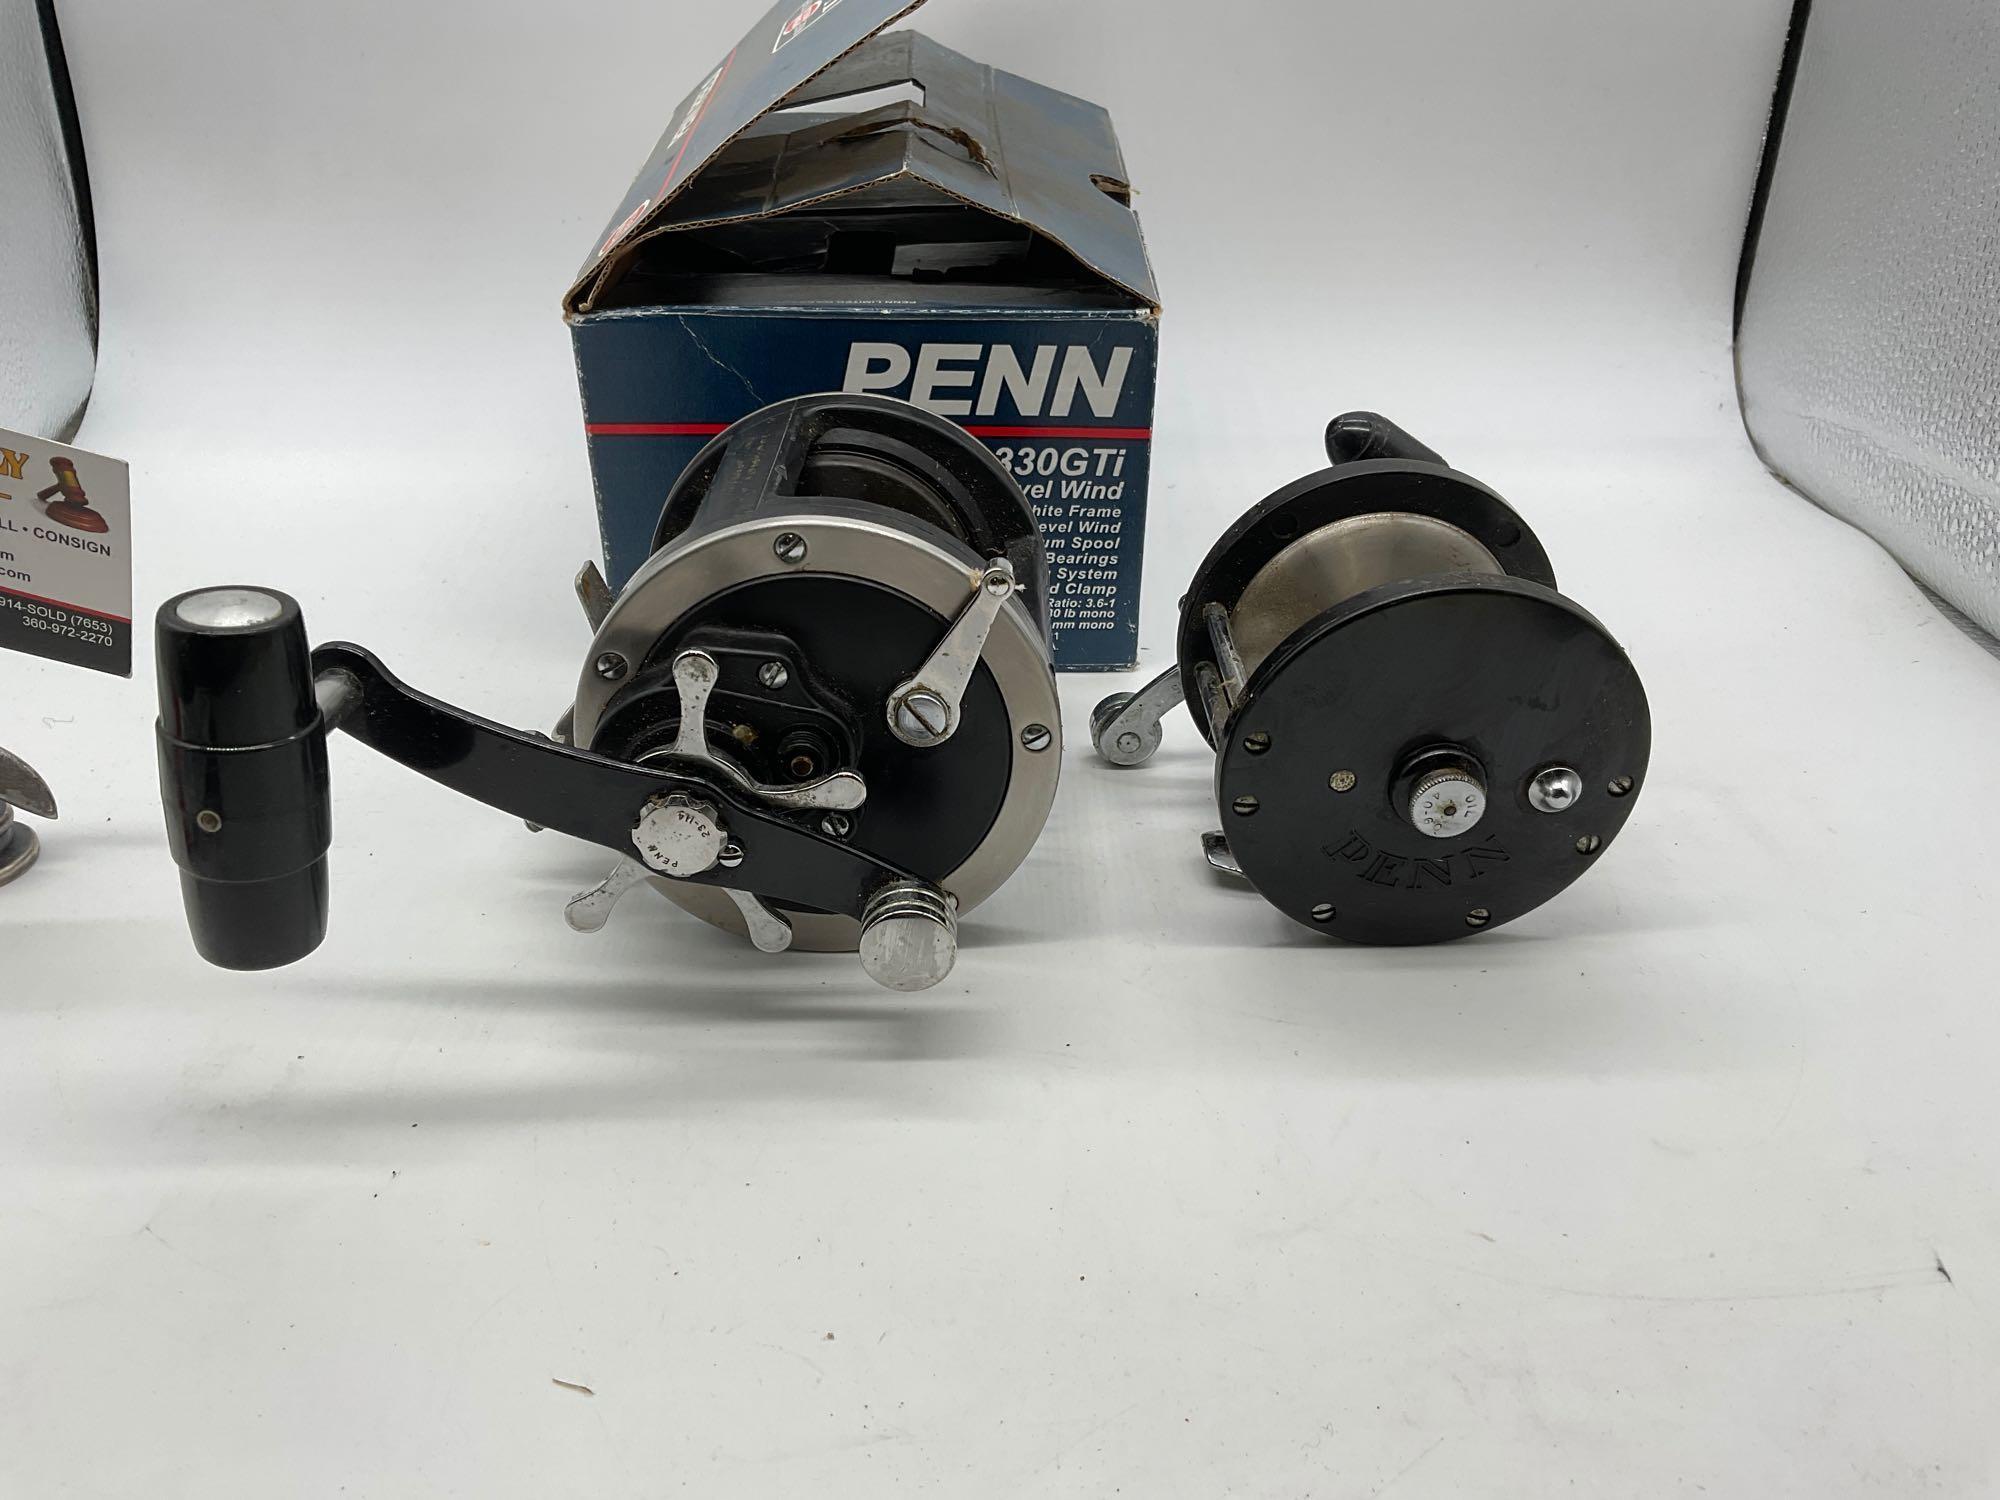 2x Fishing reels. Penn 330 GTI graphite super